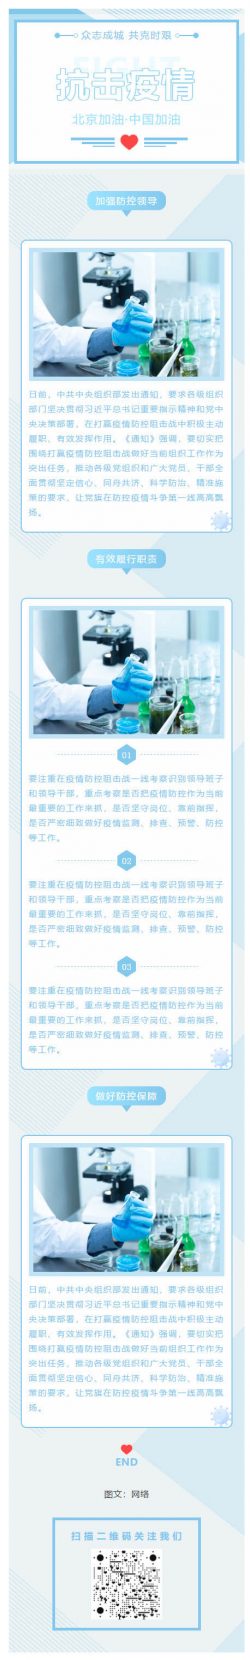 抗击疫情北京加油·中国加油新冠医疗模板微信医院素材